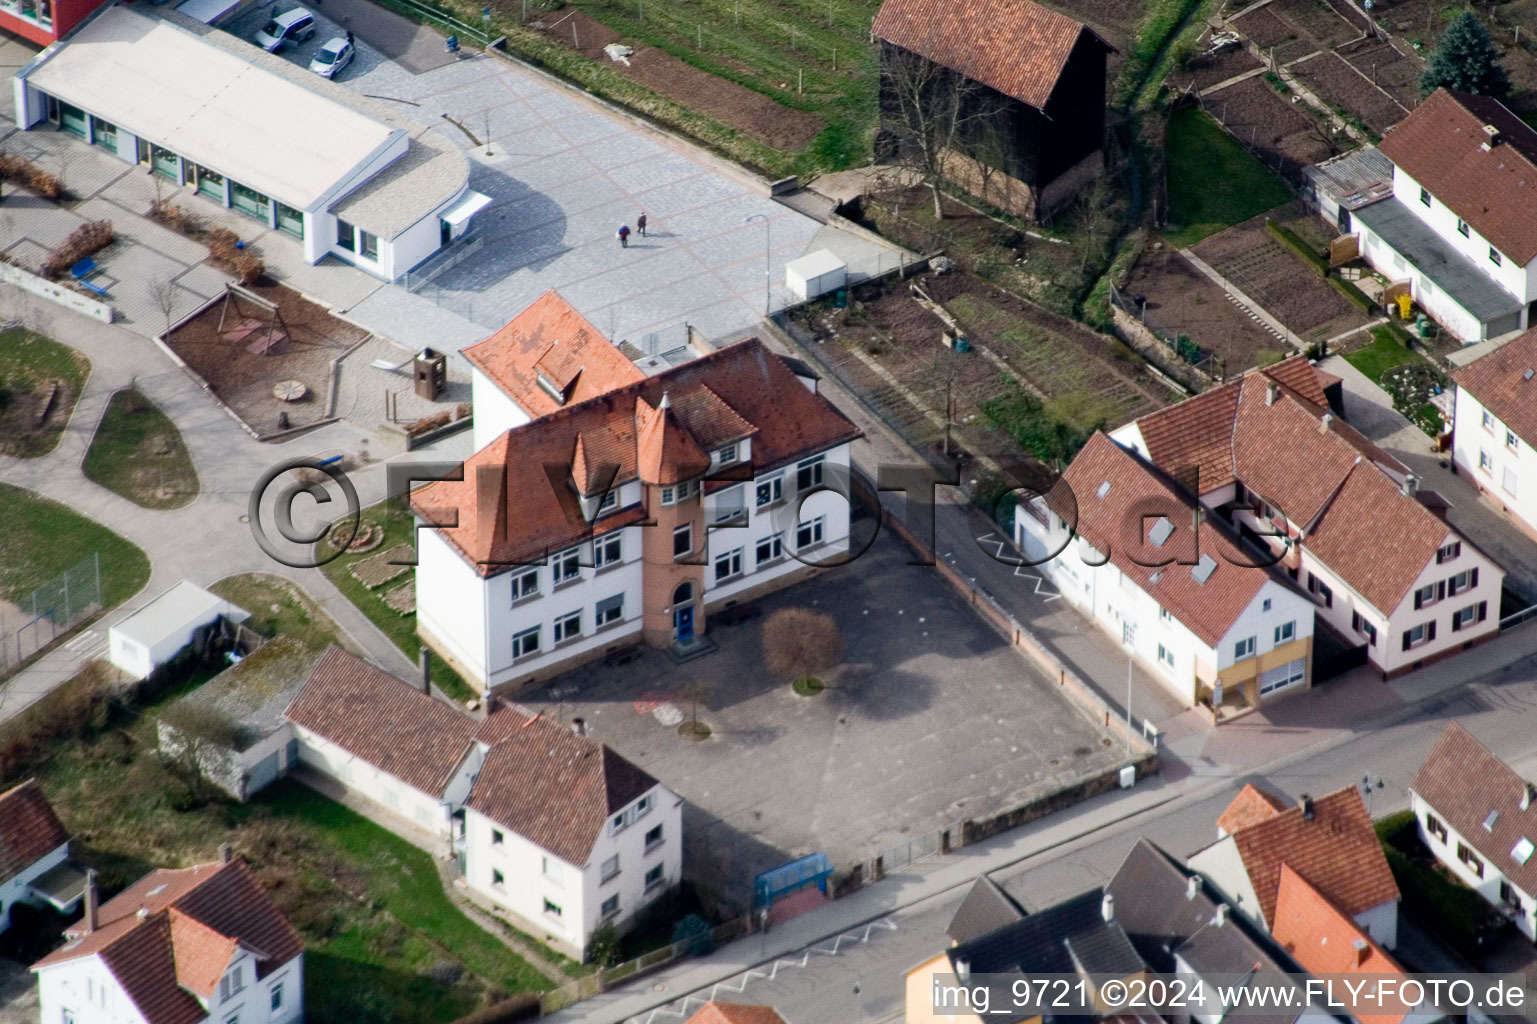 Vue aérienne de École primaire à Offenbach an der Queich dans le département Rhénanie-Palatinat, Allemagne